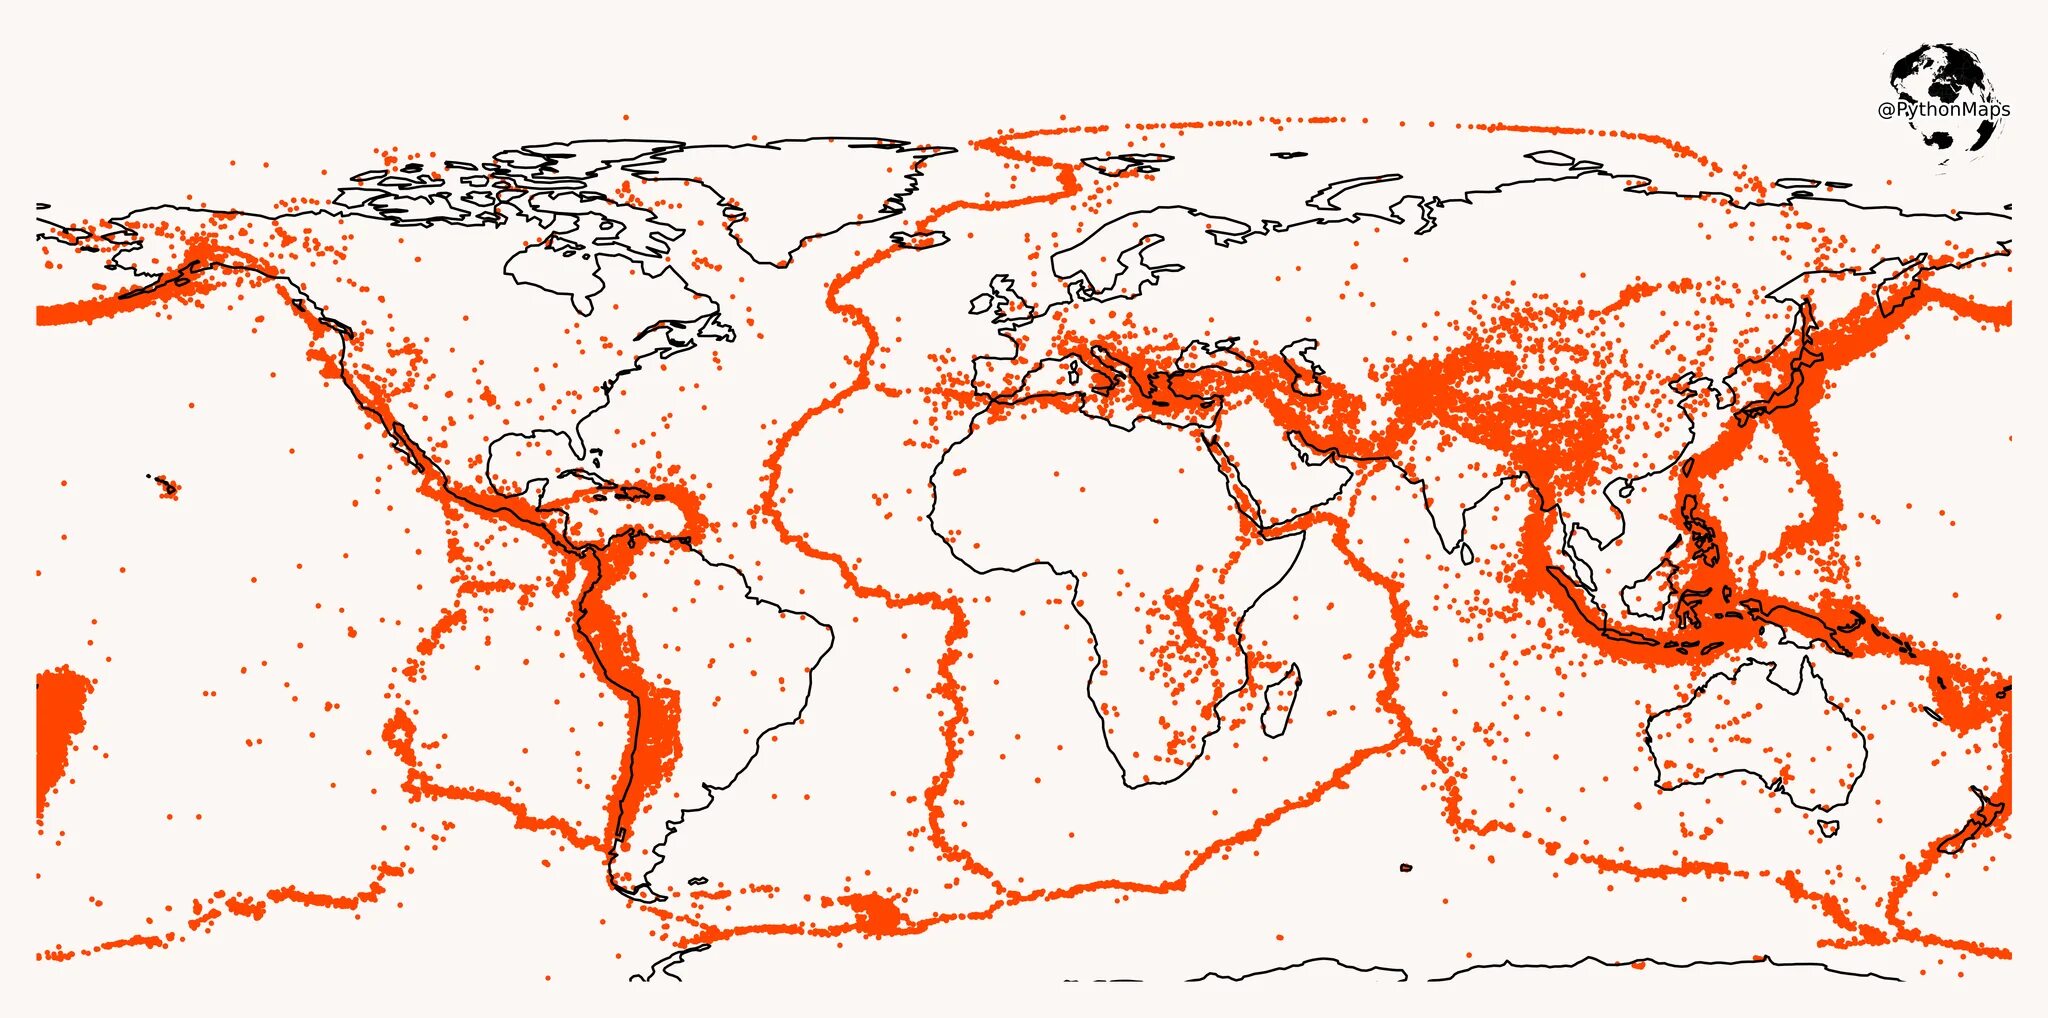 Карта где произошли землетрясения. Карта землетрясений. Карта сейсмичности земли. Карта землетрясений земли.